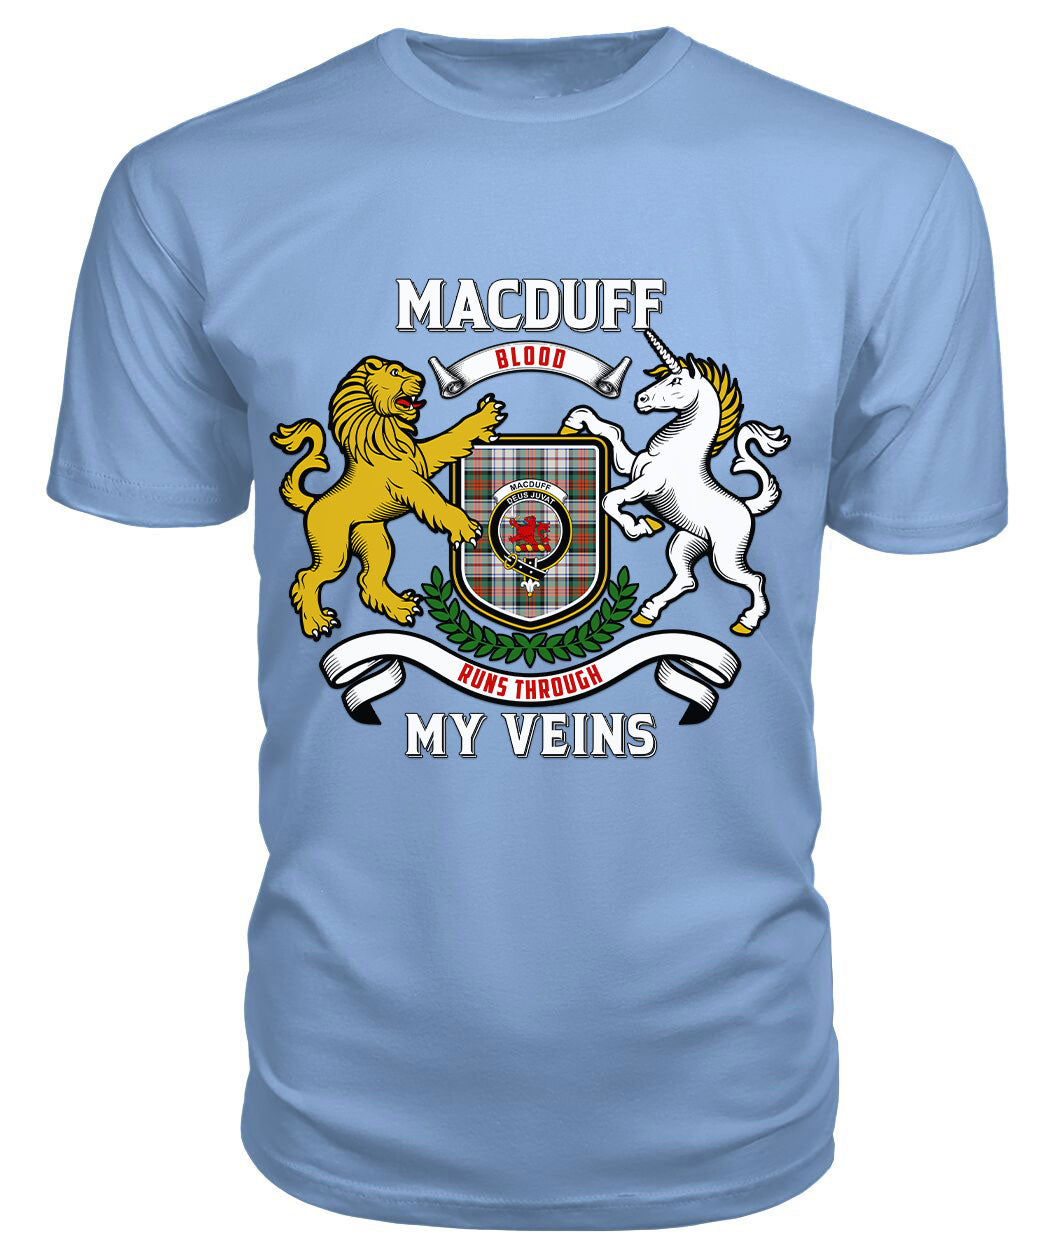 MacDuff Dress Ancient Tartan Crest 2D T-shirt - Blood Runs Through My Veins Style